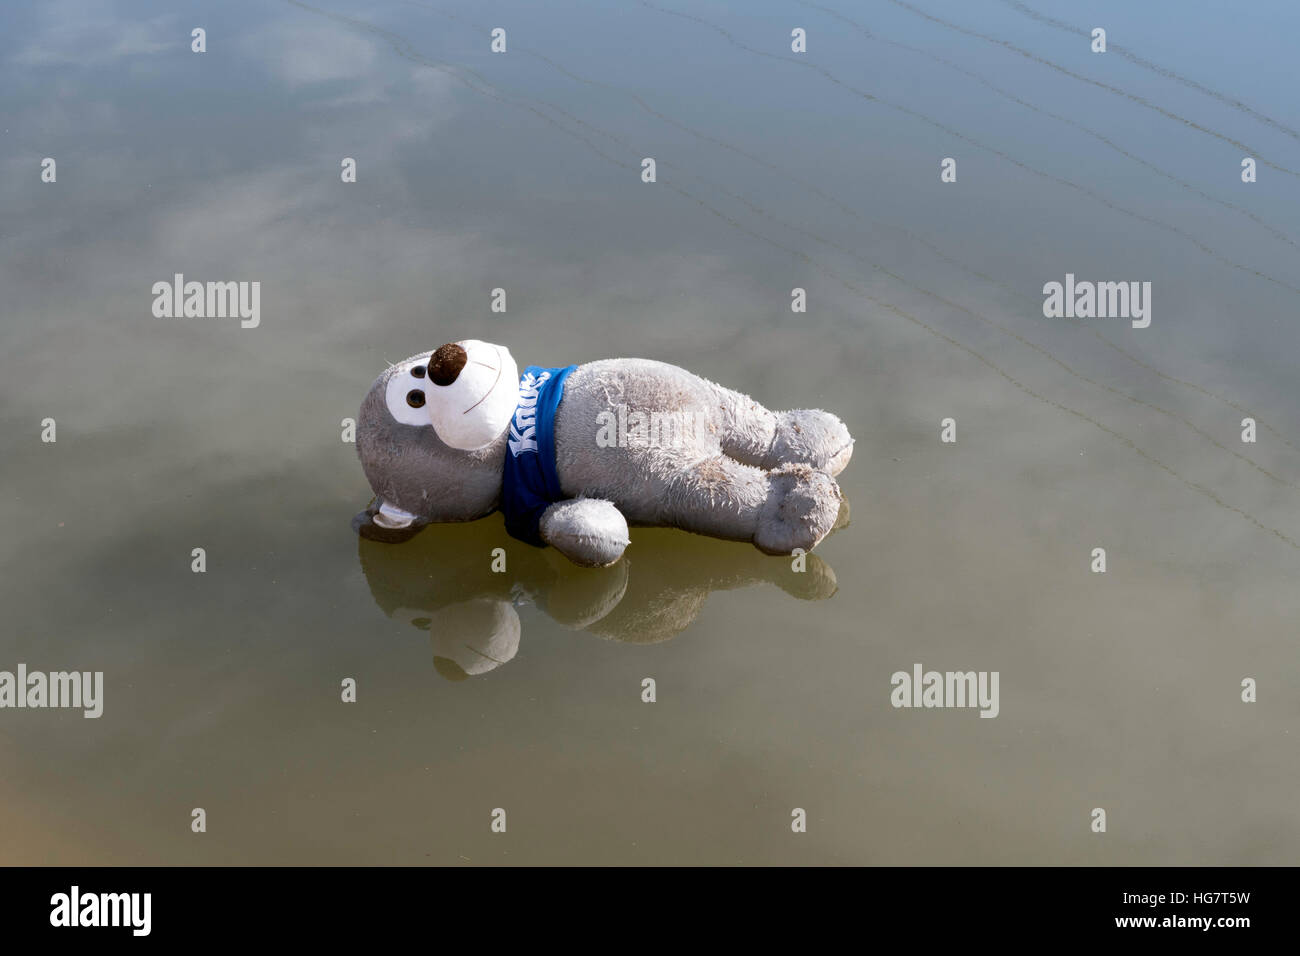 Teddy bear floating immagini e fotografie stock ad alta risoluzione - Alamy